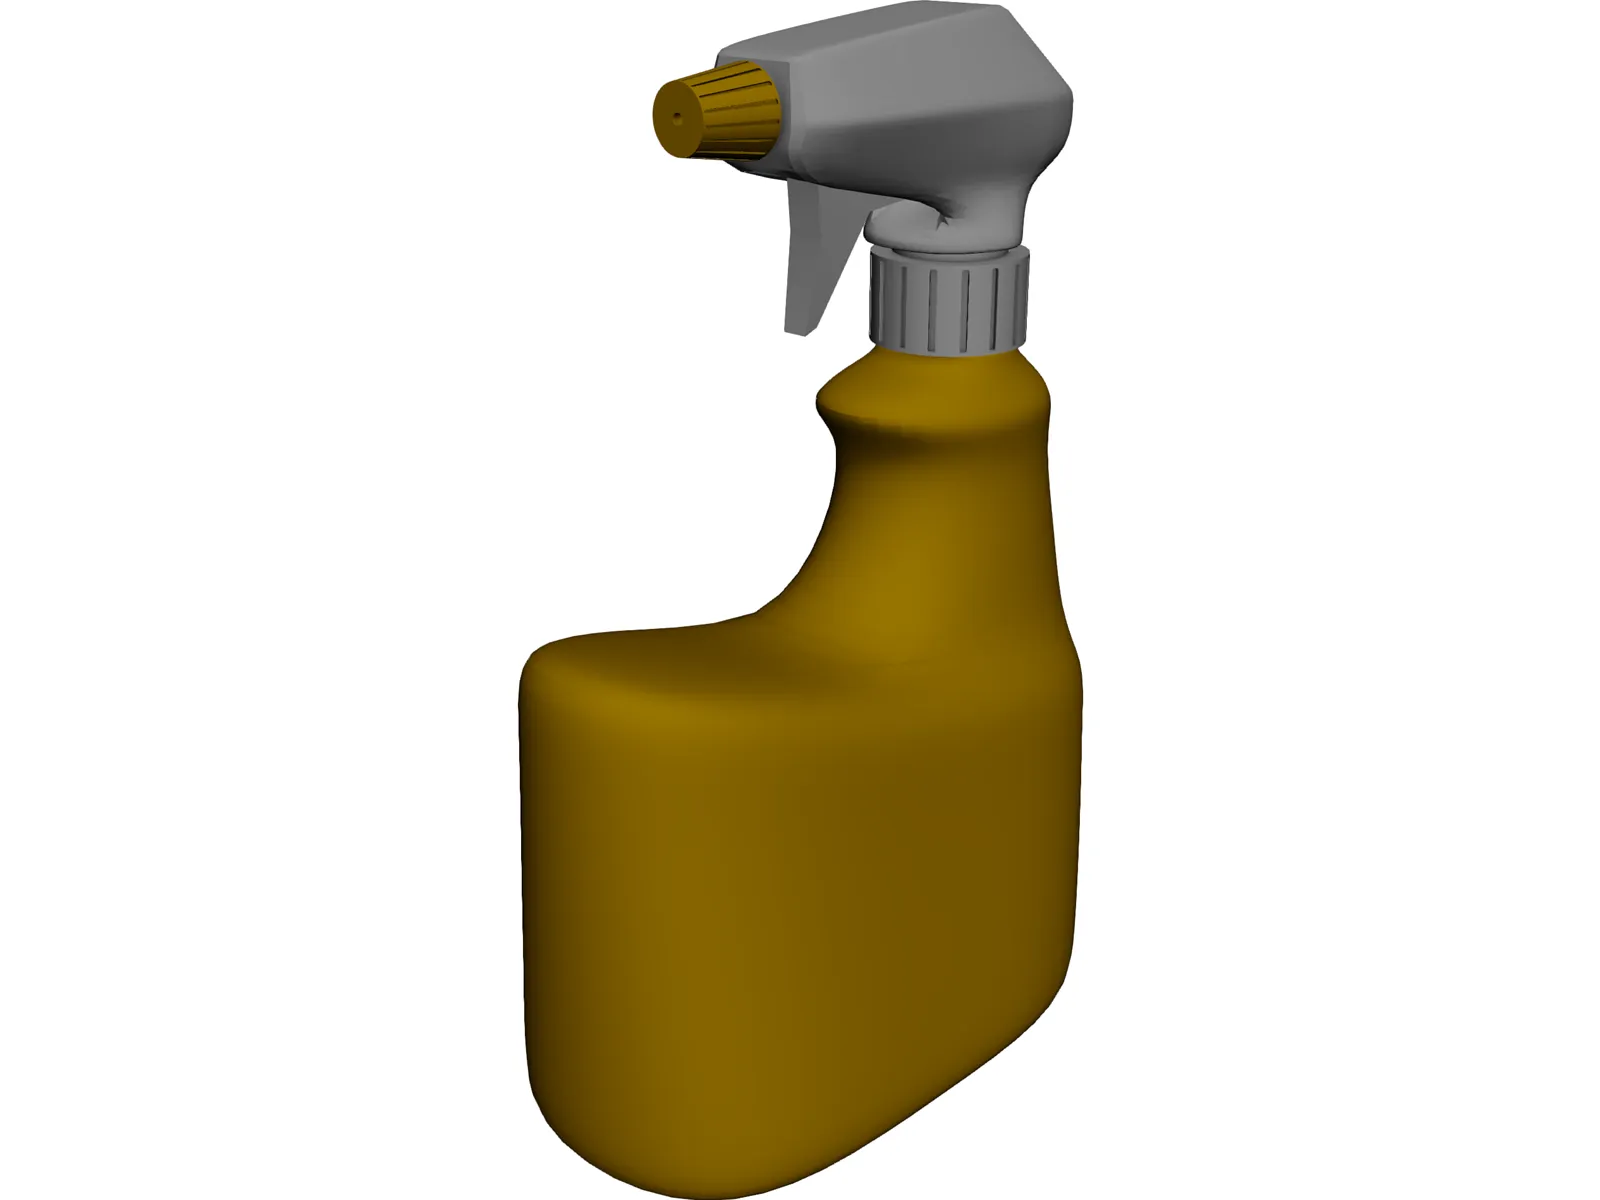 Bottle Spray 3D Model